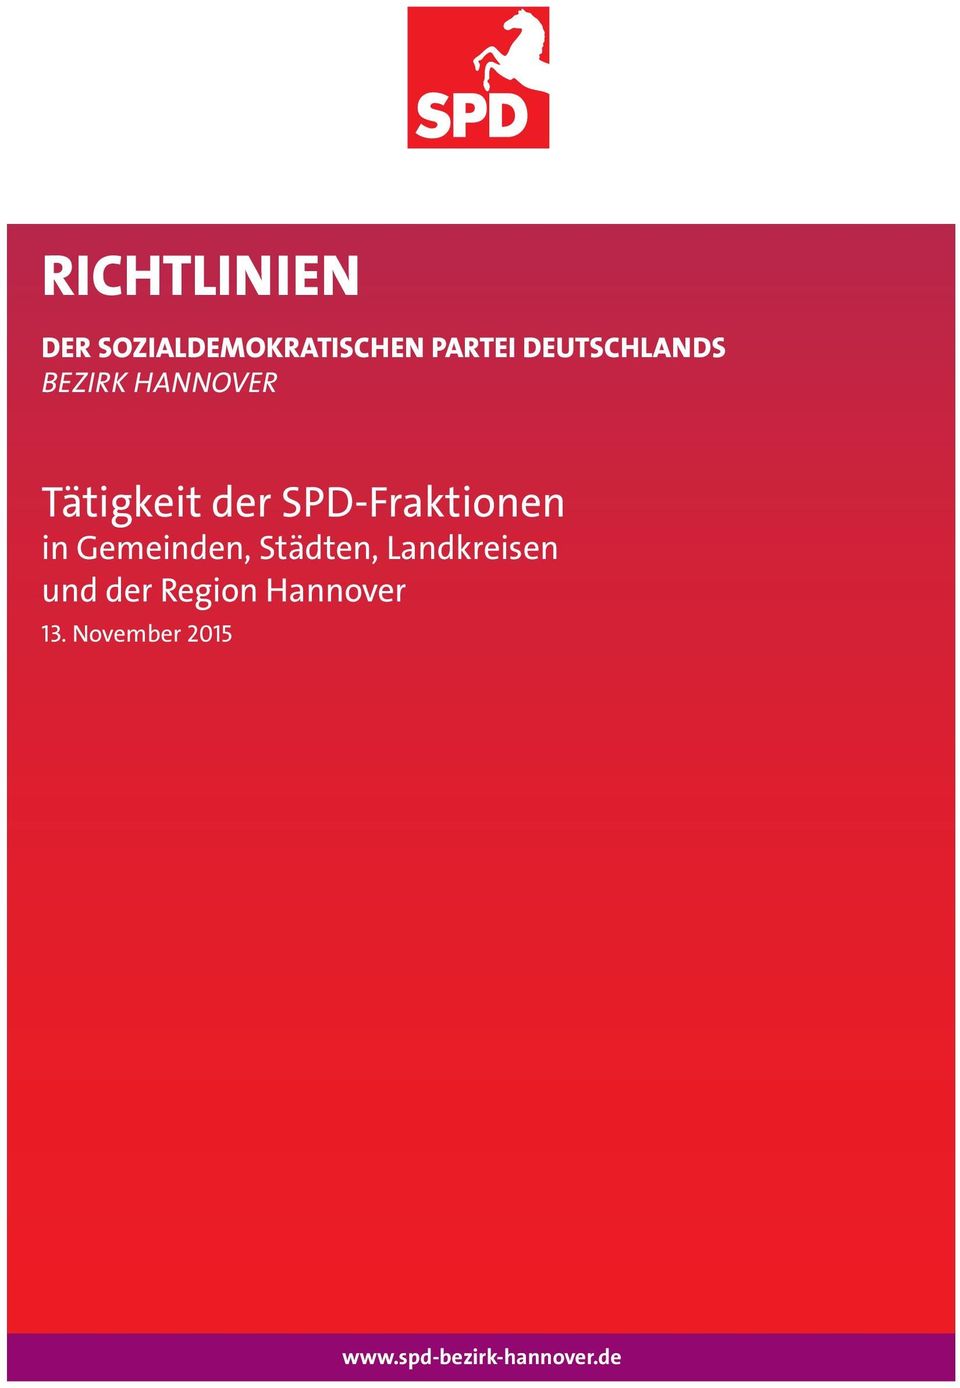 SPD-Fraktionen in Gemeinden, Städten, Landkreisen